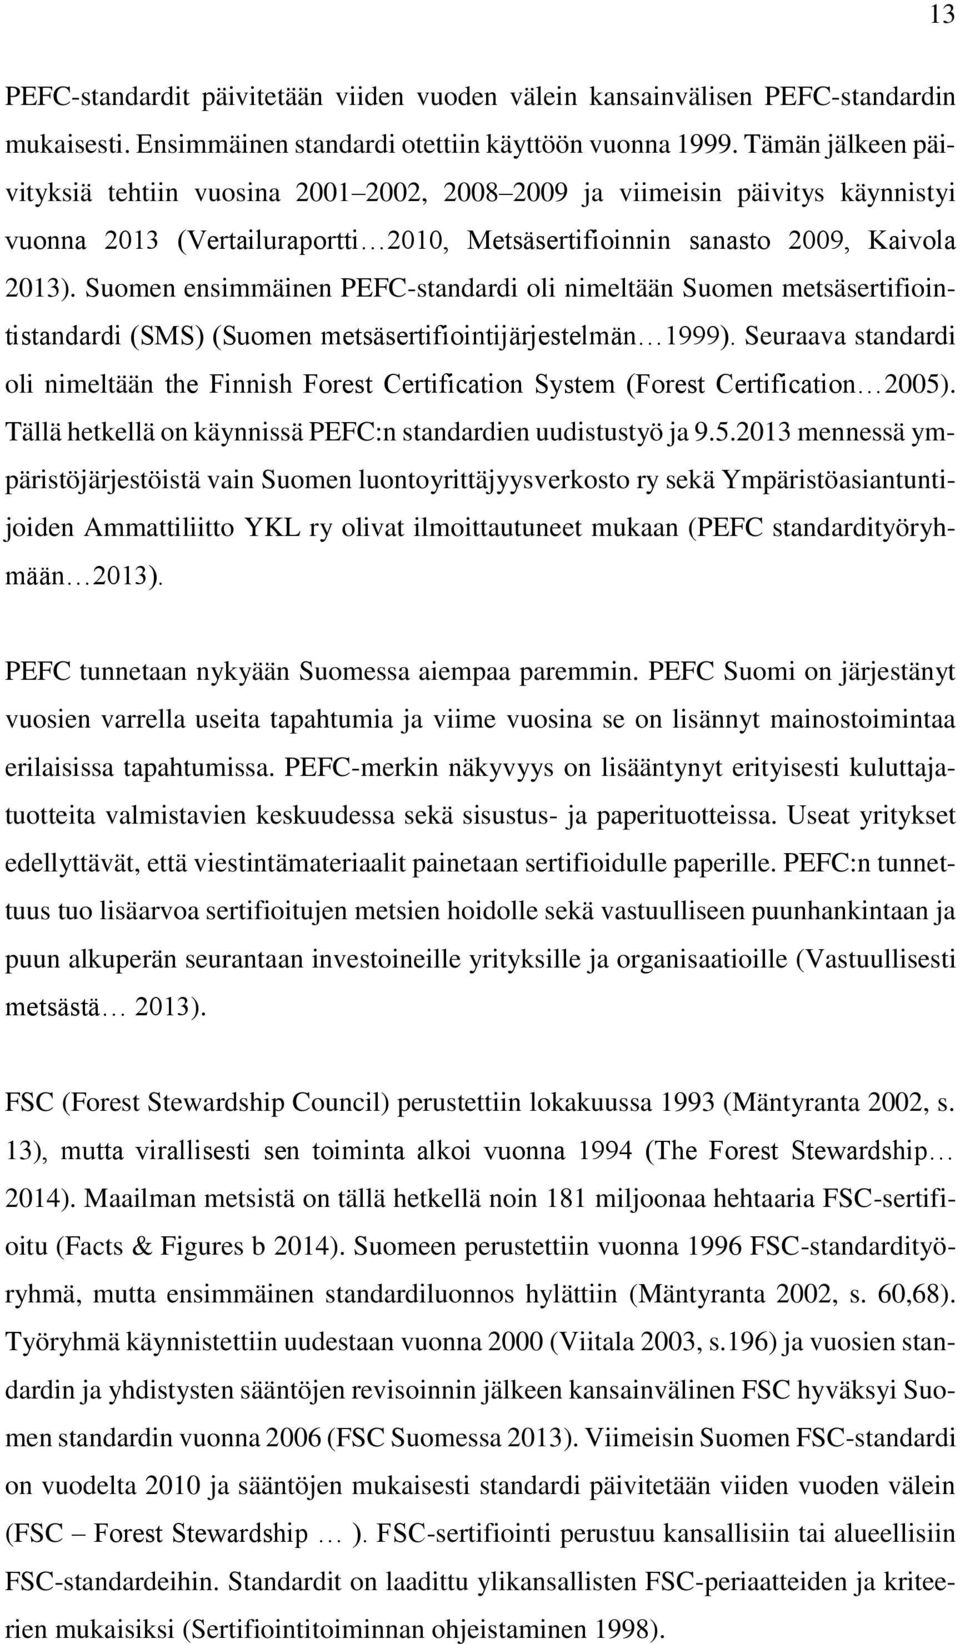 Suomen ensimmäinen PEFC-standardi oli nimeltään Suomen metsäsertifiointistandardi (SMS) (Suomen metsäsertifiointijärjestelmän 1999).